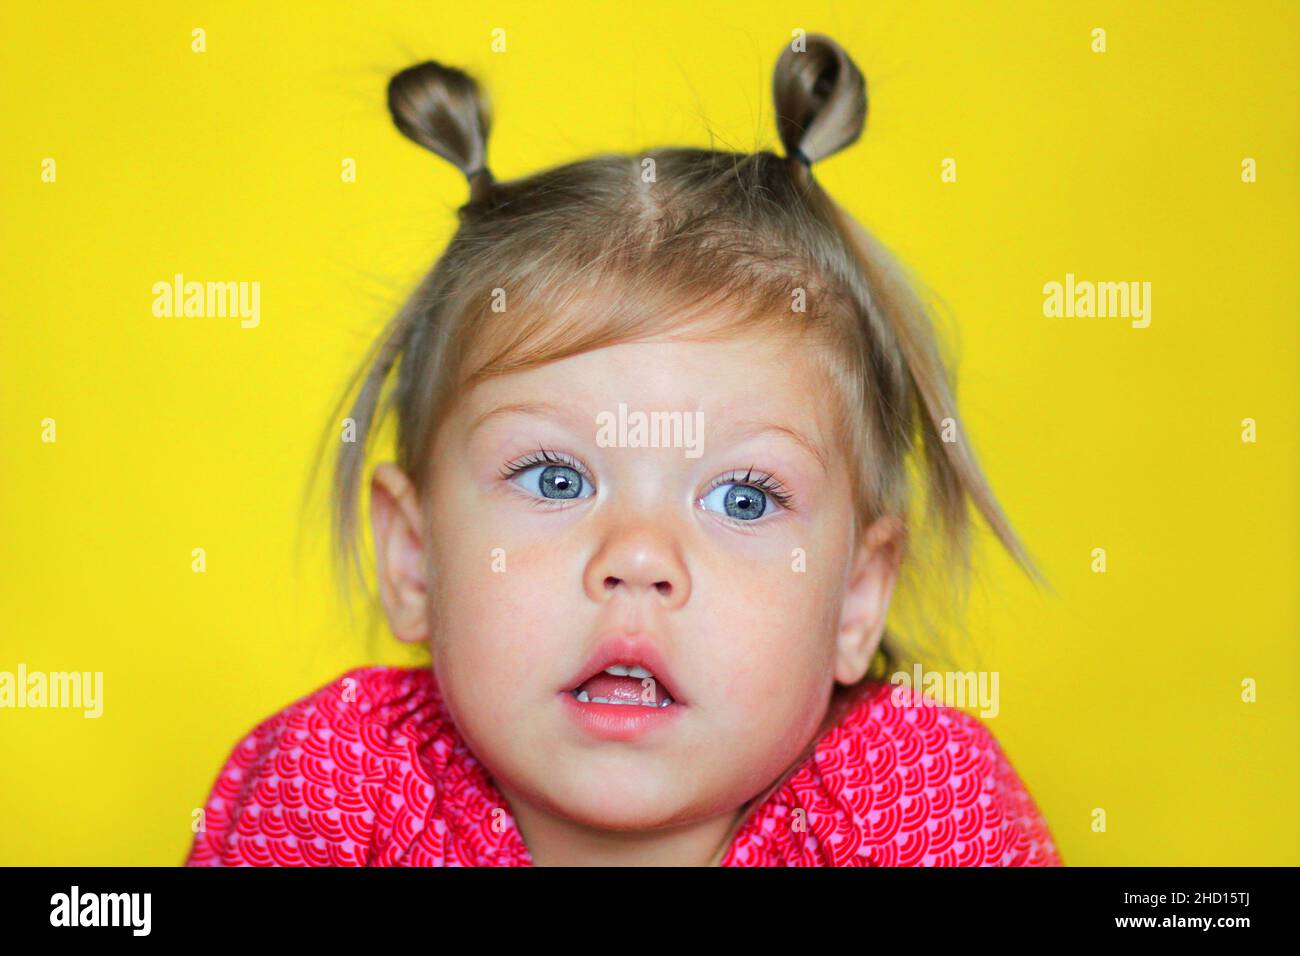 Porträt von verwirrt kaukasischen Kind Kind Mädchen von 2 Jahren mit offenem Mund auf gelbem Hintergrund Stockfoto